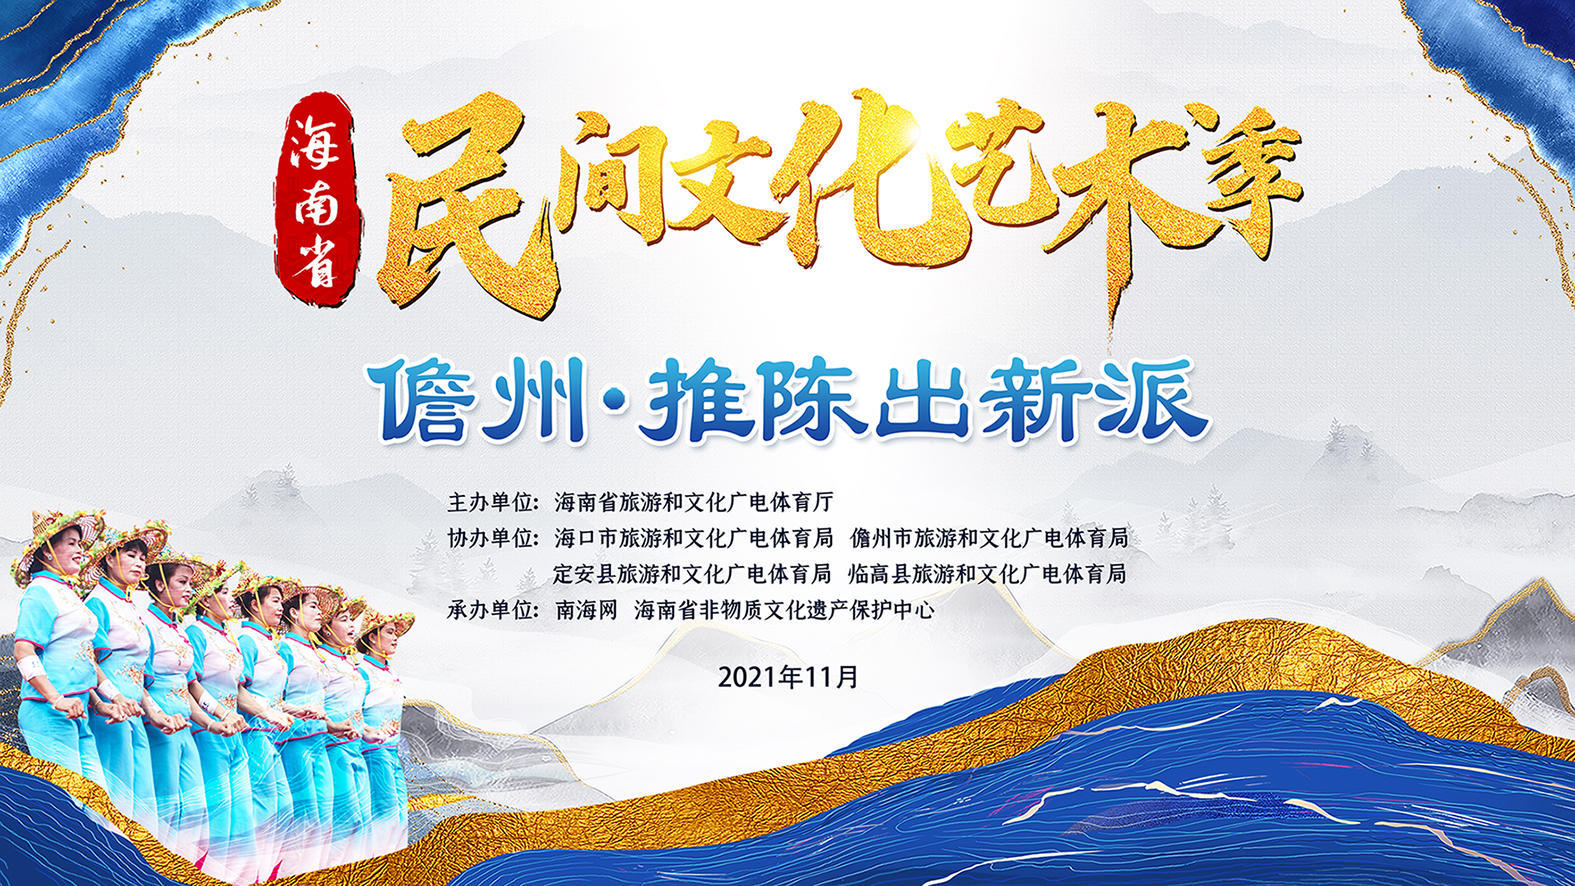 直播预告丨海南省民间文化艺术季活动将于19日晚在儋州上演